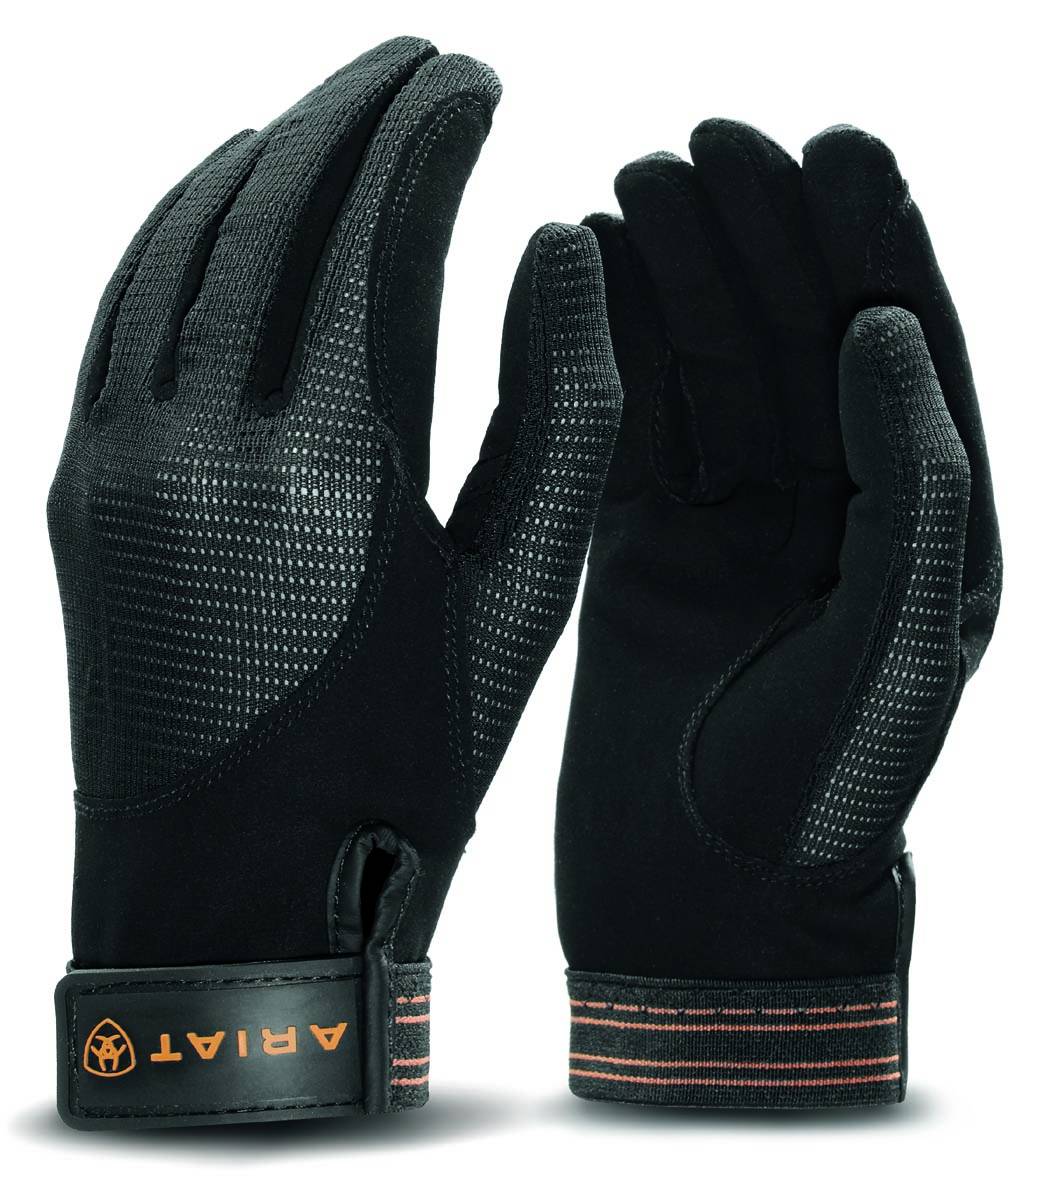 Ariat Air Grip Gloves Black